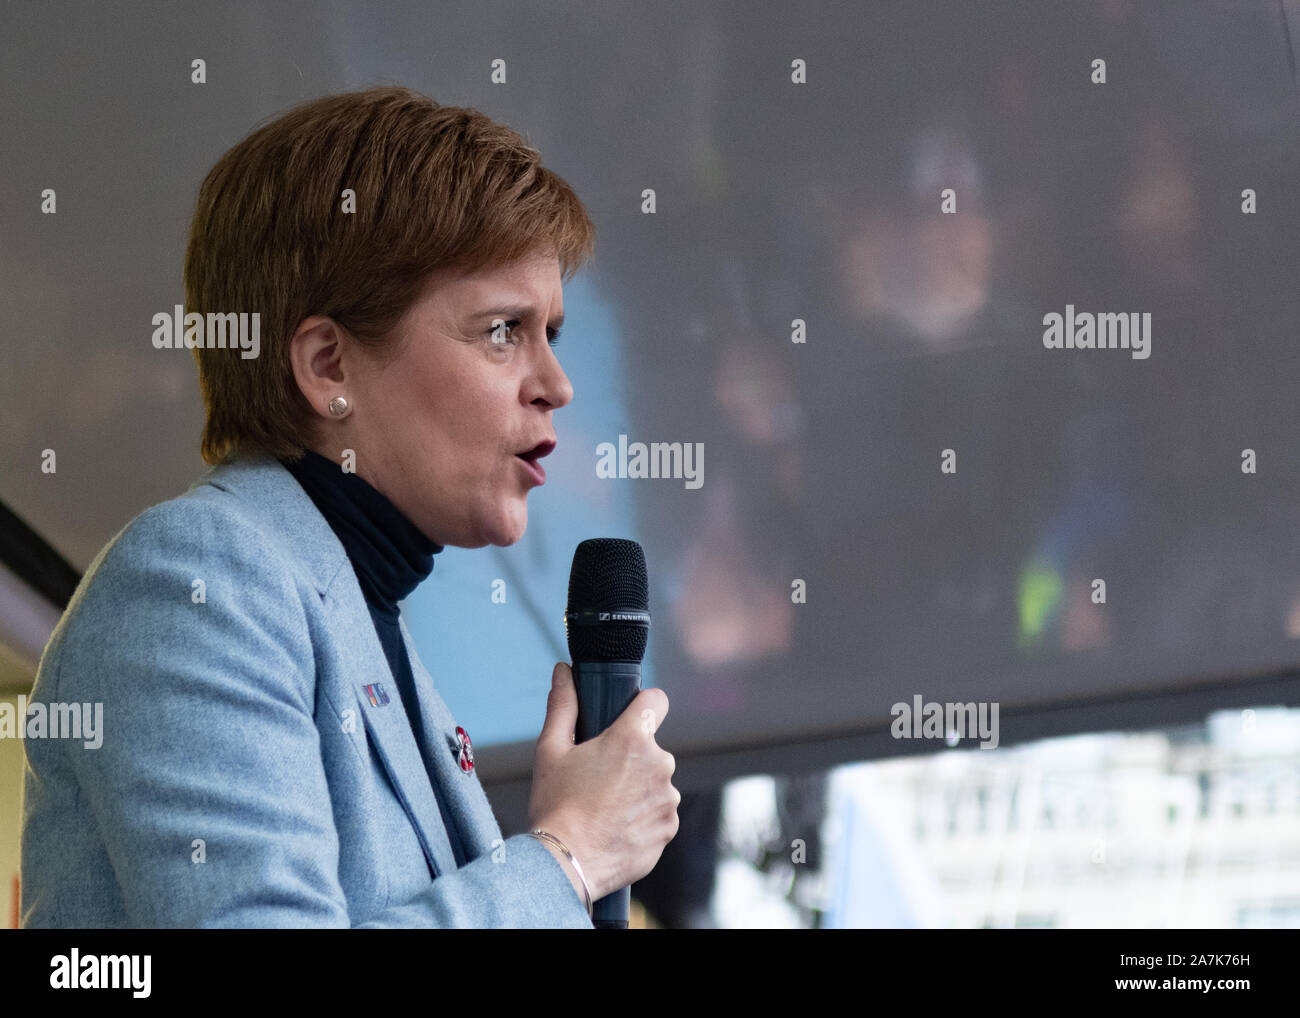 Nicola Sturgeon Premier ministre écossais parlant à l'indyref 2020 rassemblement à George Square, Glasgow, Écosse, Royaume-Uni le 2 novembre 2019 Banque D'Images